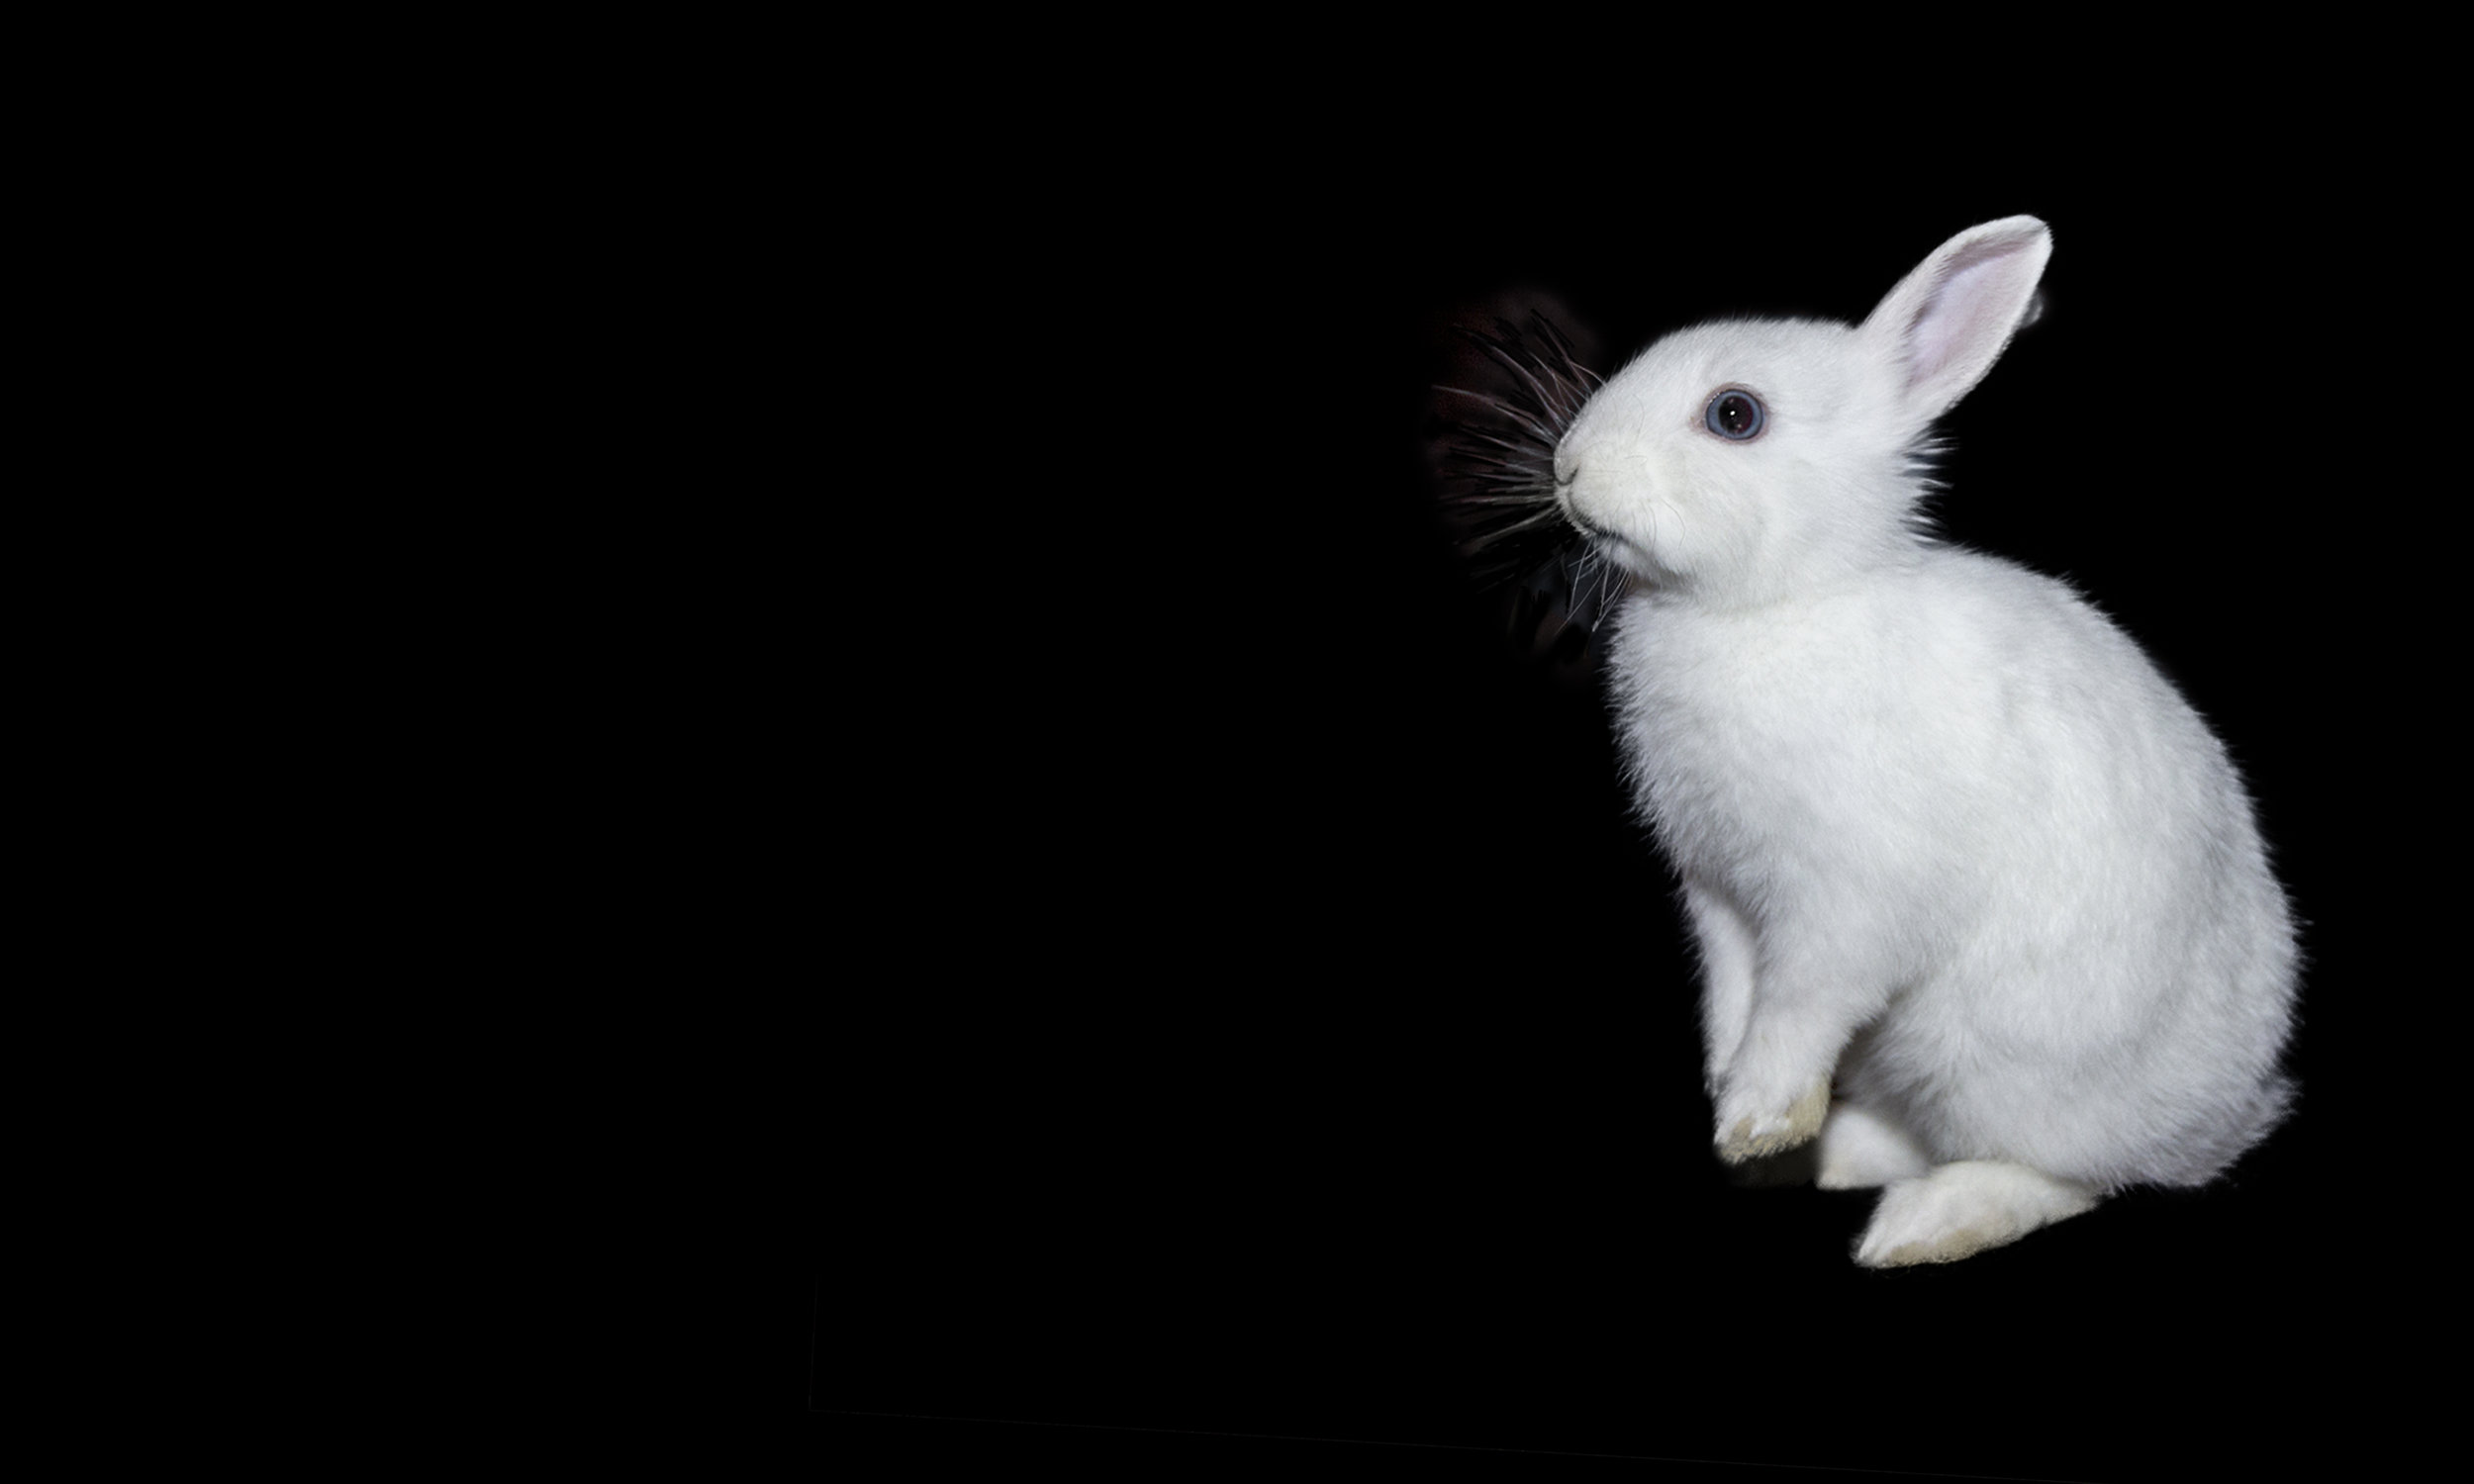 The White Rabbit Enigma